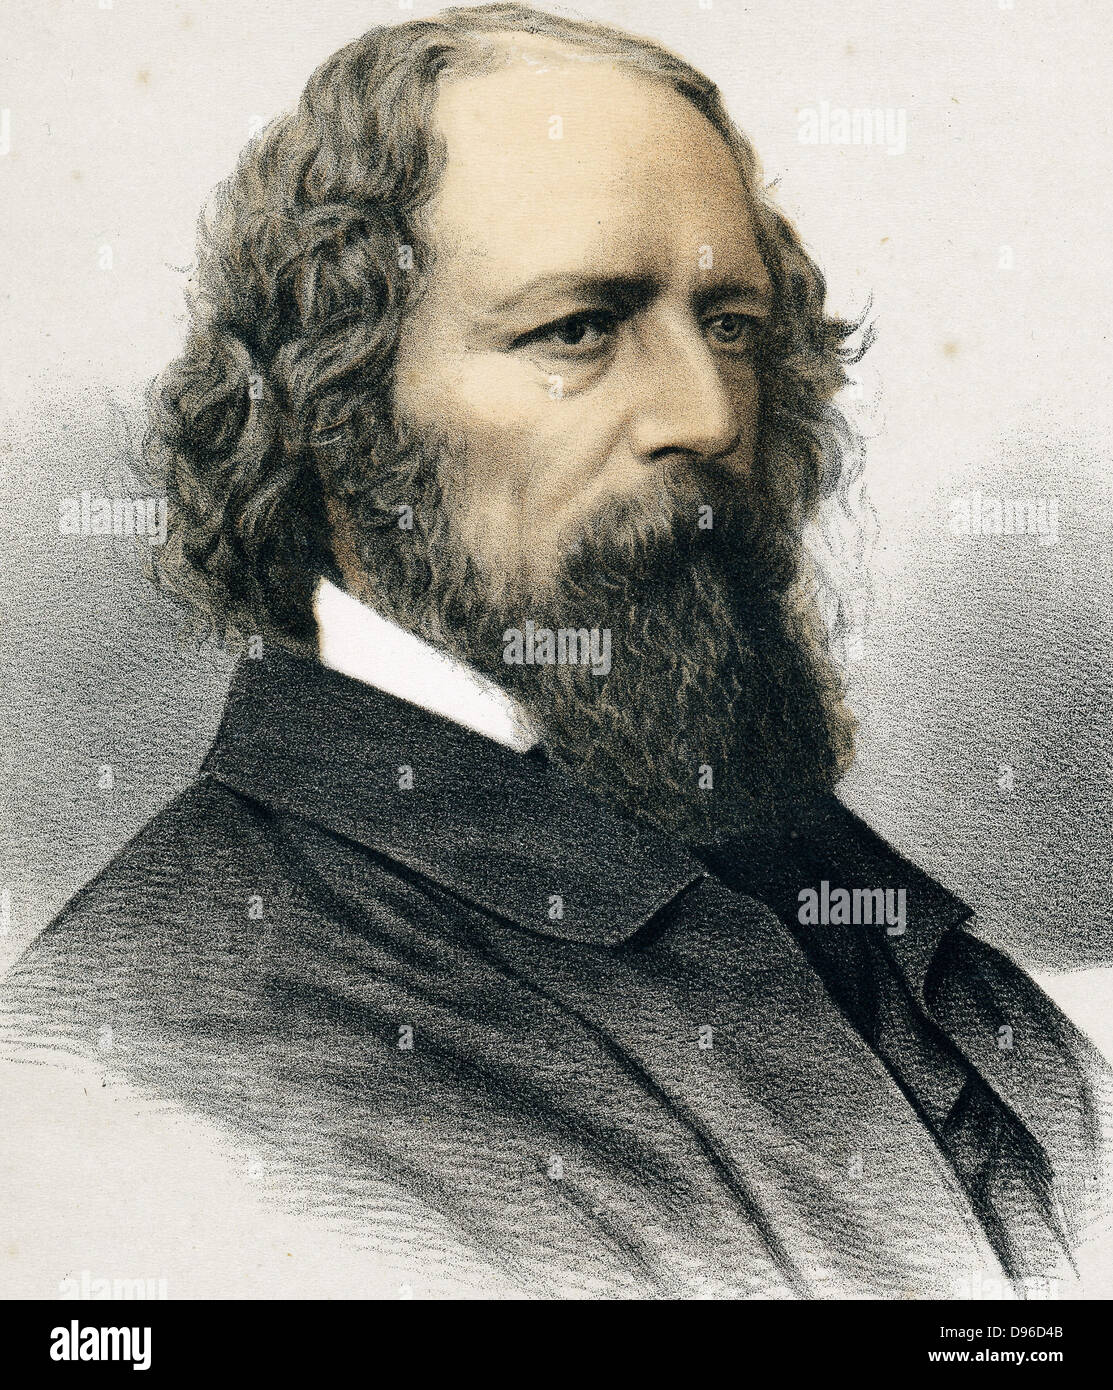 Alfred, lord Tennyson (1809-1892), poète britannique. Poète Lauréat 1850. Lithographie teintée publié c1880. Banque D'Images